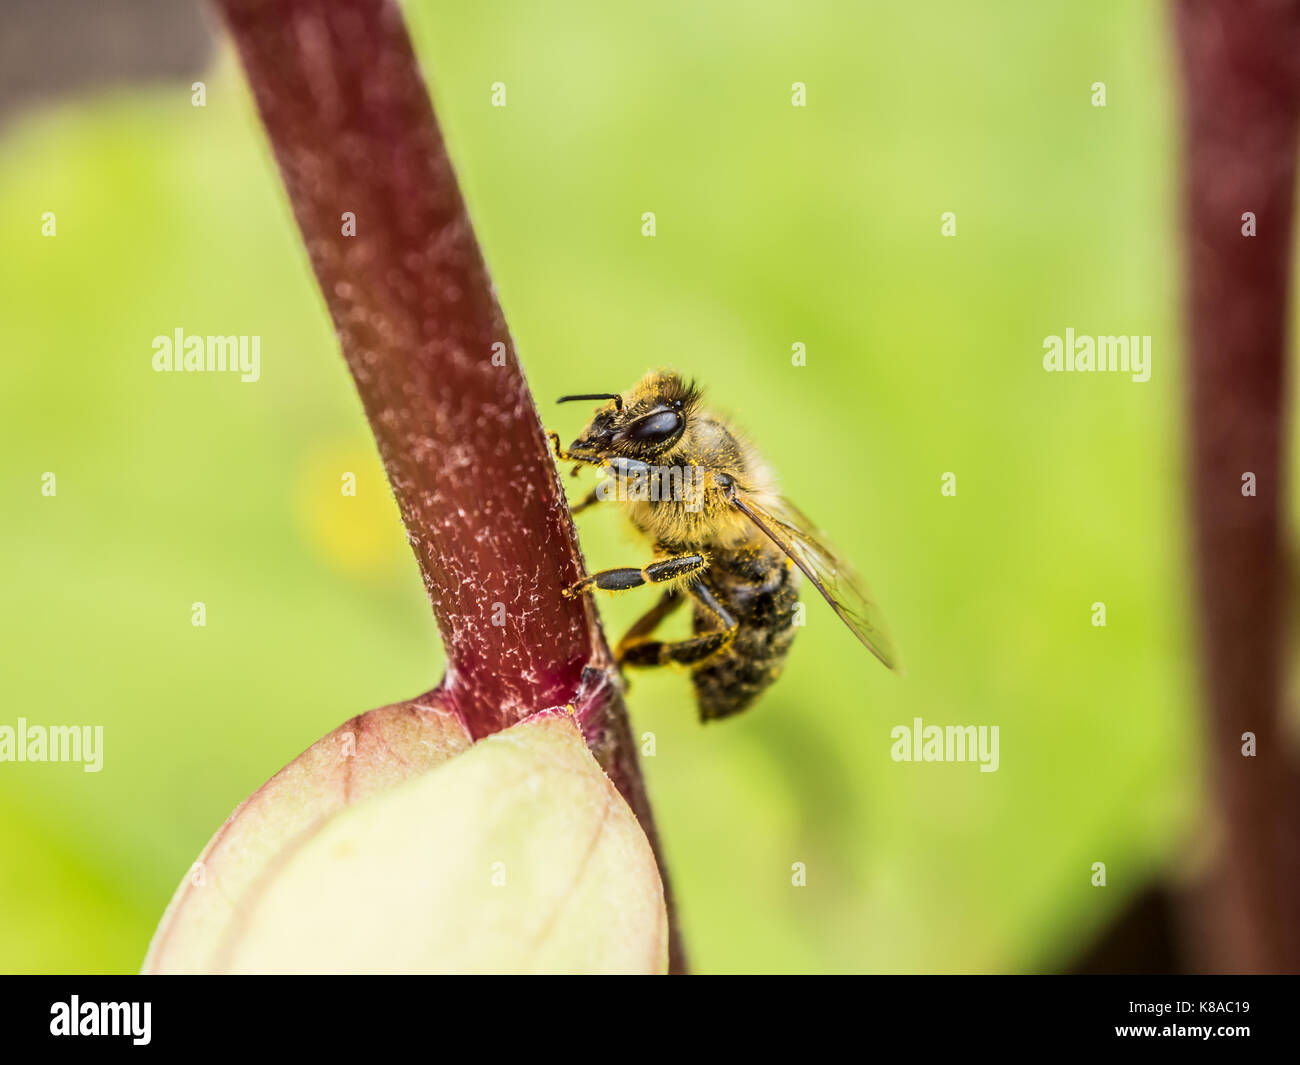 Die bestäubung. Honig Biene sitzt auf einer roten Blume sprig. Makro anzeigen. close-up Fotografie. grünen Hintergrund. Stockfoto